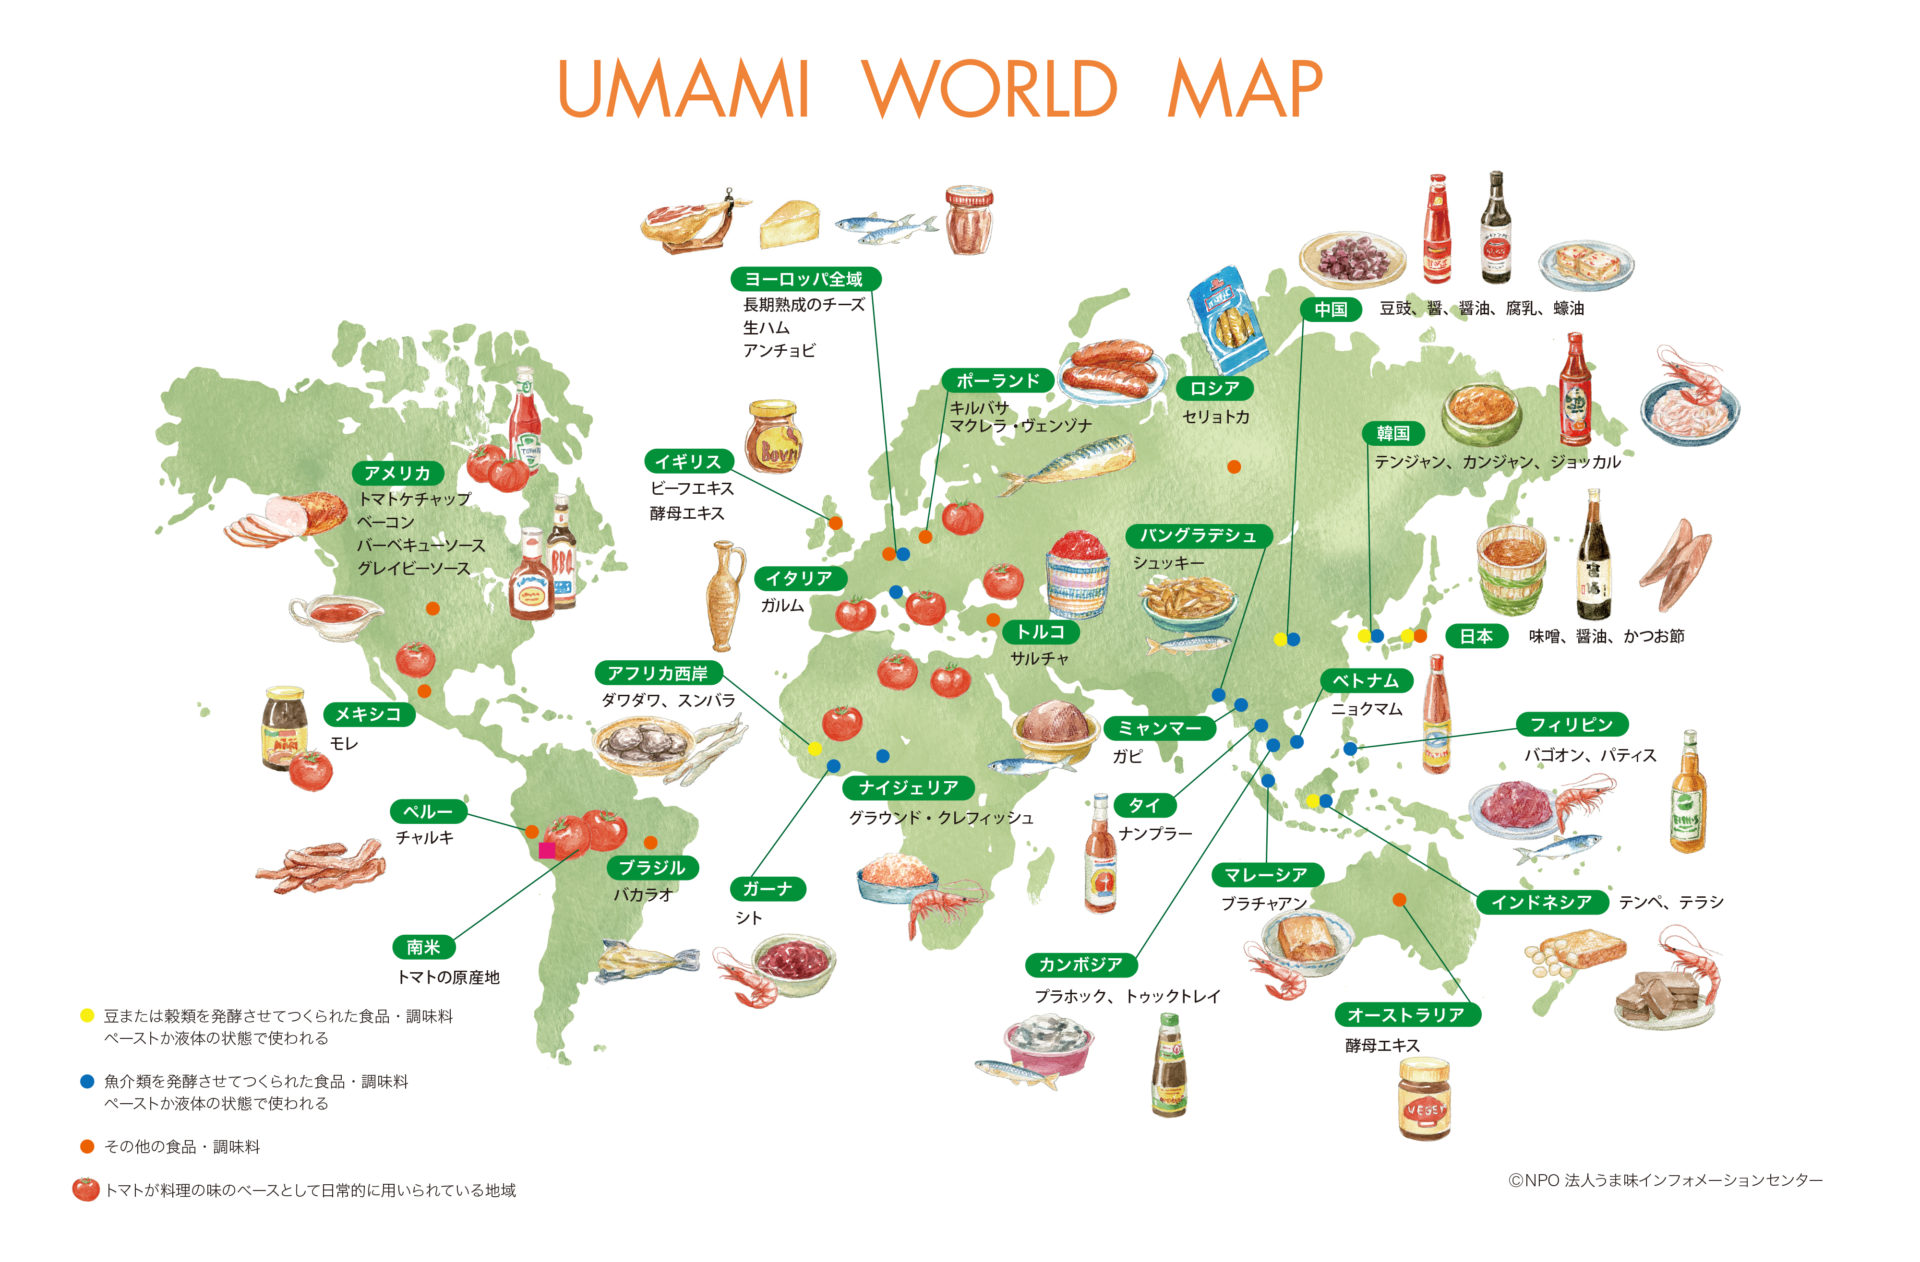 UMAMI WORLD MAP